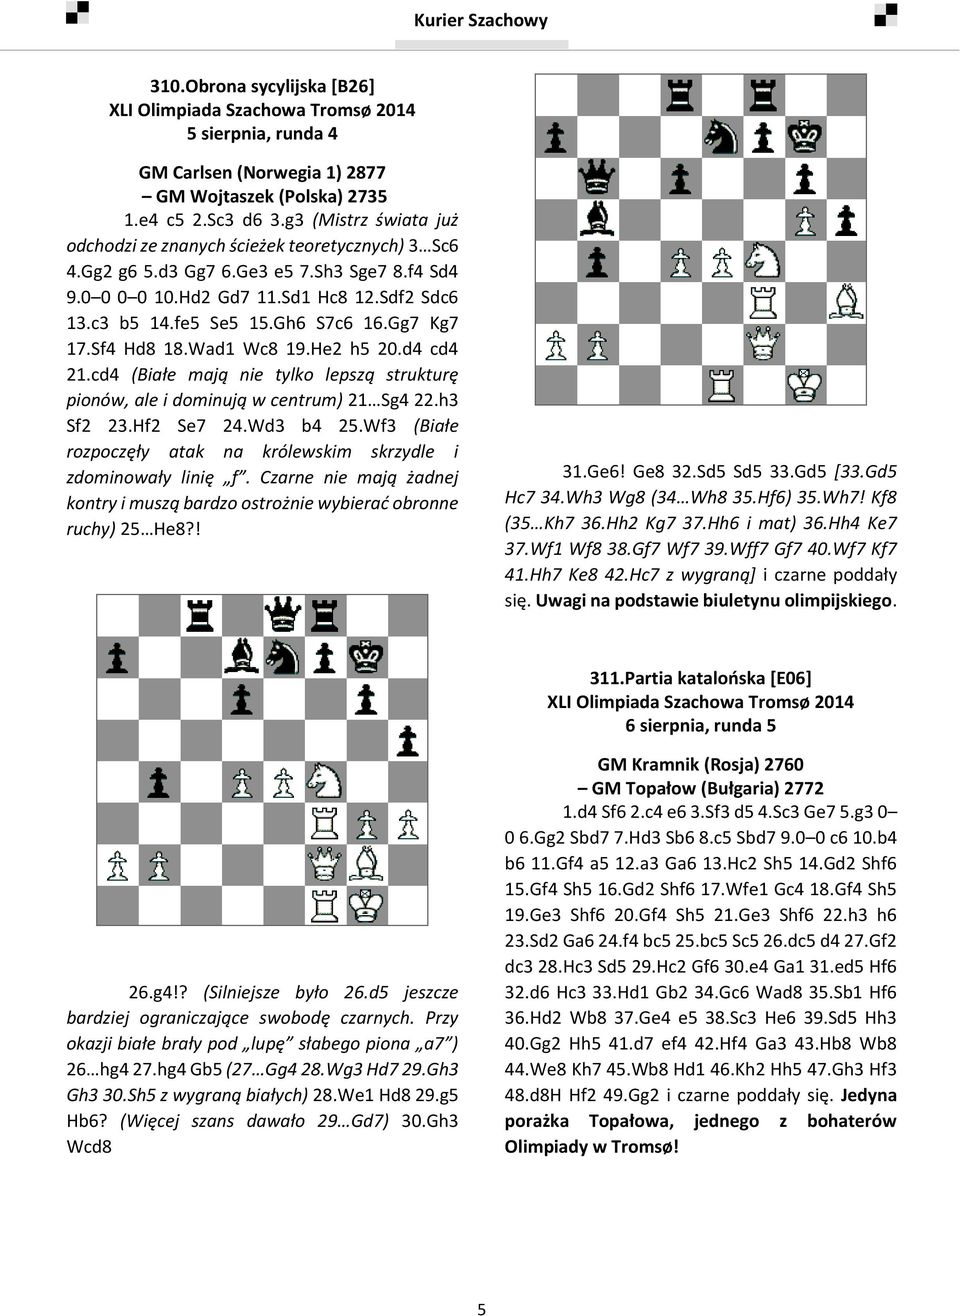 Gg7 Kg7 17.Sf4 Hd8 18.Wad1 Wc8 19.He2 h5 20.d4 cd4 21.cd4 (Białe mają nie tylko lepszą strukturę pionów, ale i dominują w centrum) 21 Sg4 22.h3 Sf2 23.Hf2 Se7 24.Wd3 b4 25.